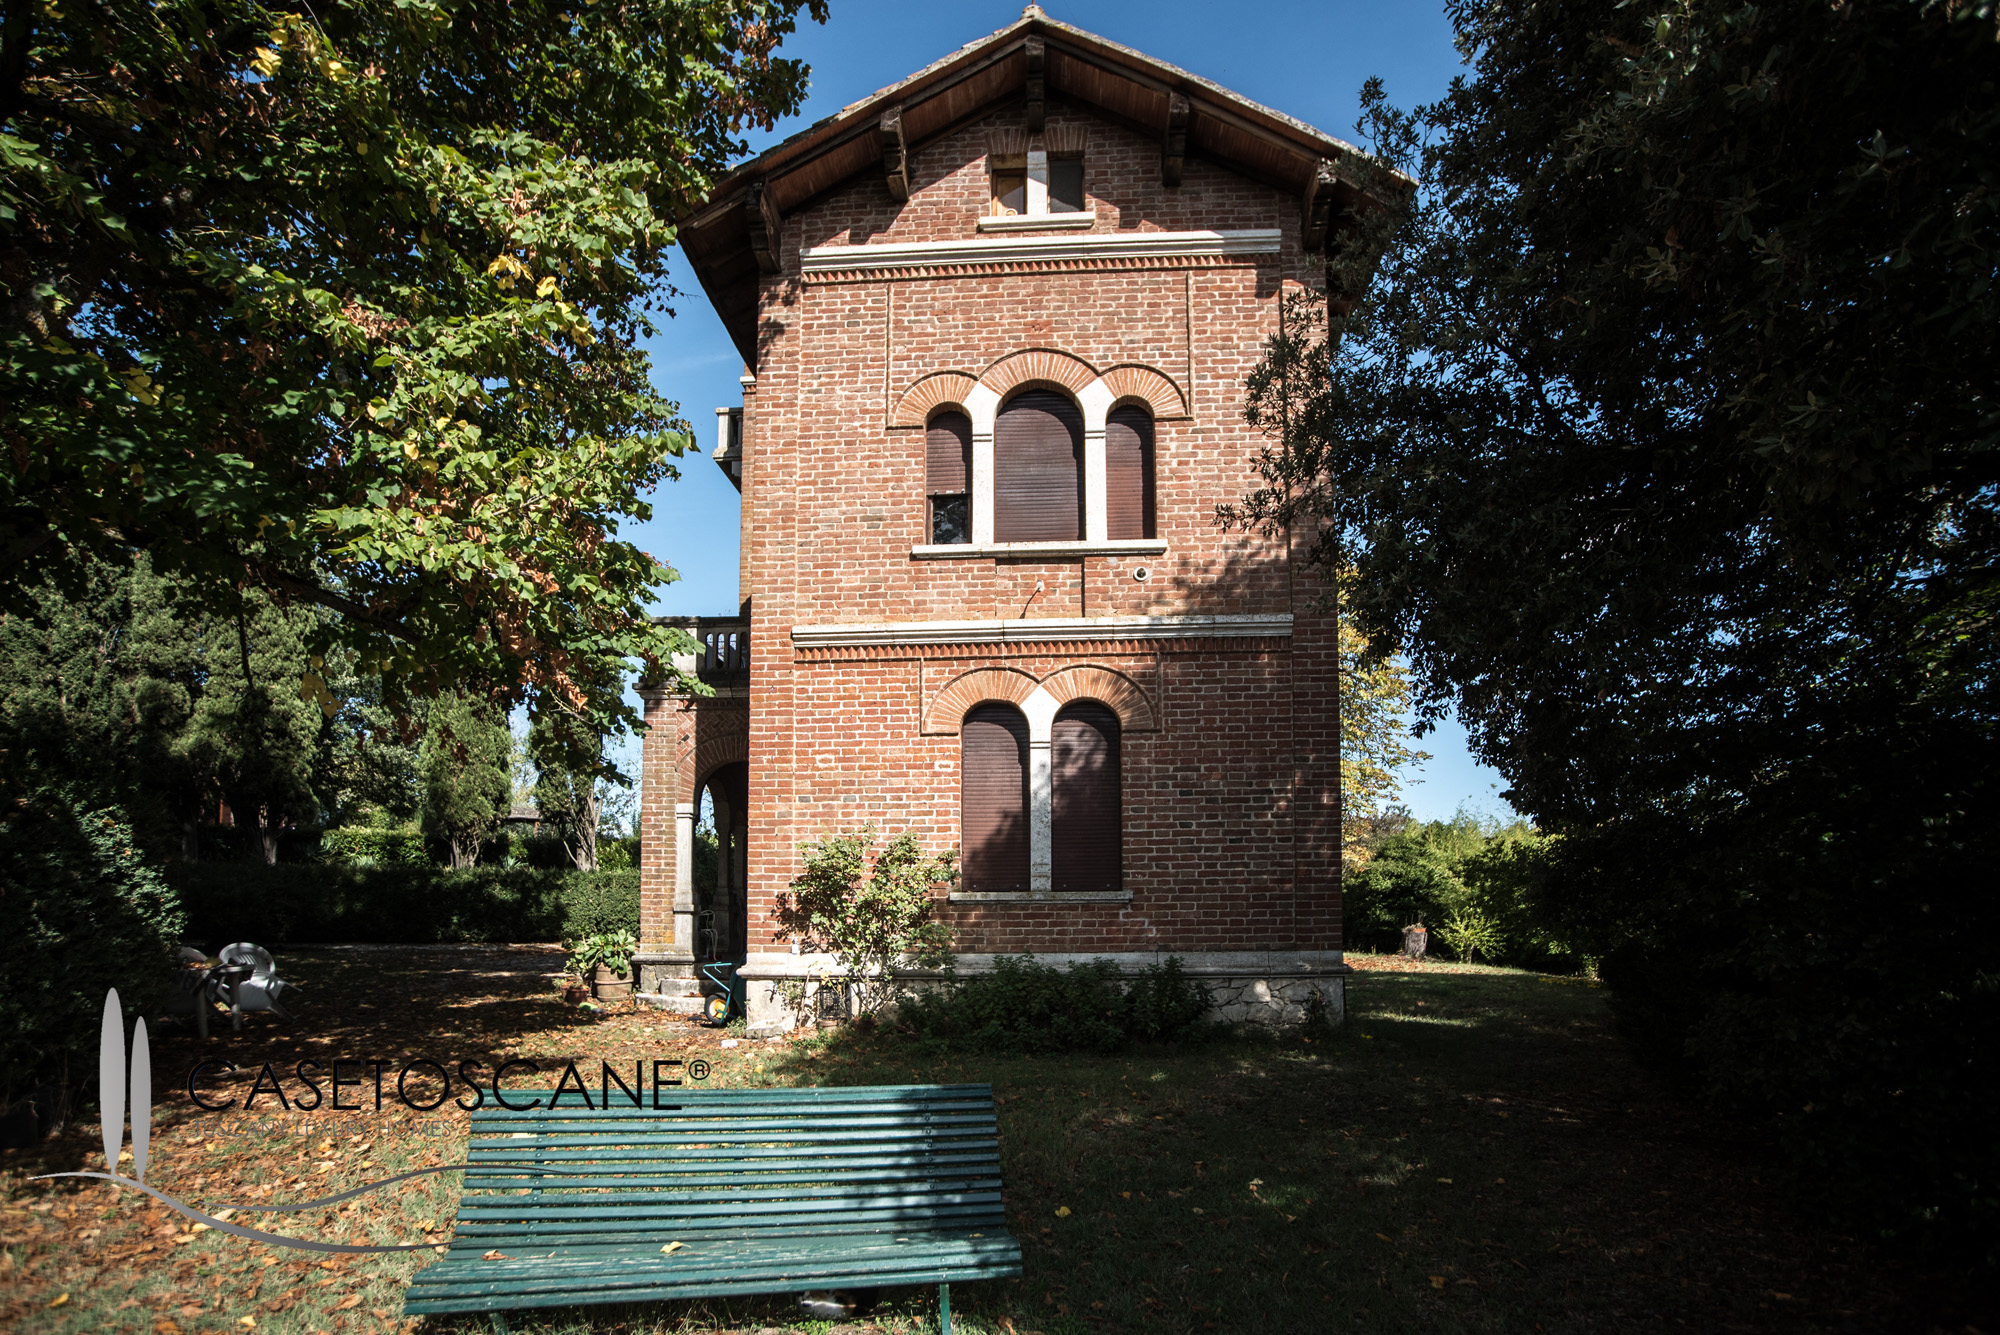 2930 - Proprietà di prestigio con villa liberty e casale ristrutturato, con accesso al lago di Montepulciano (Siena).